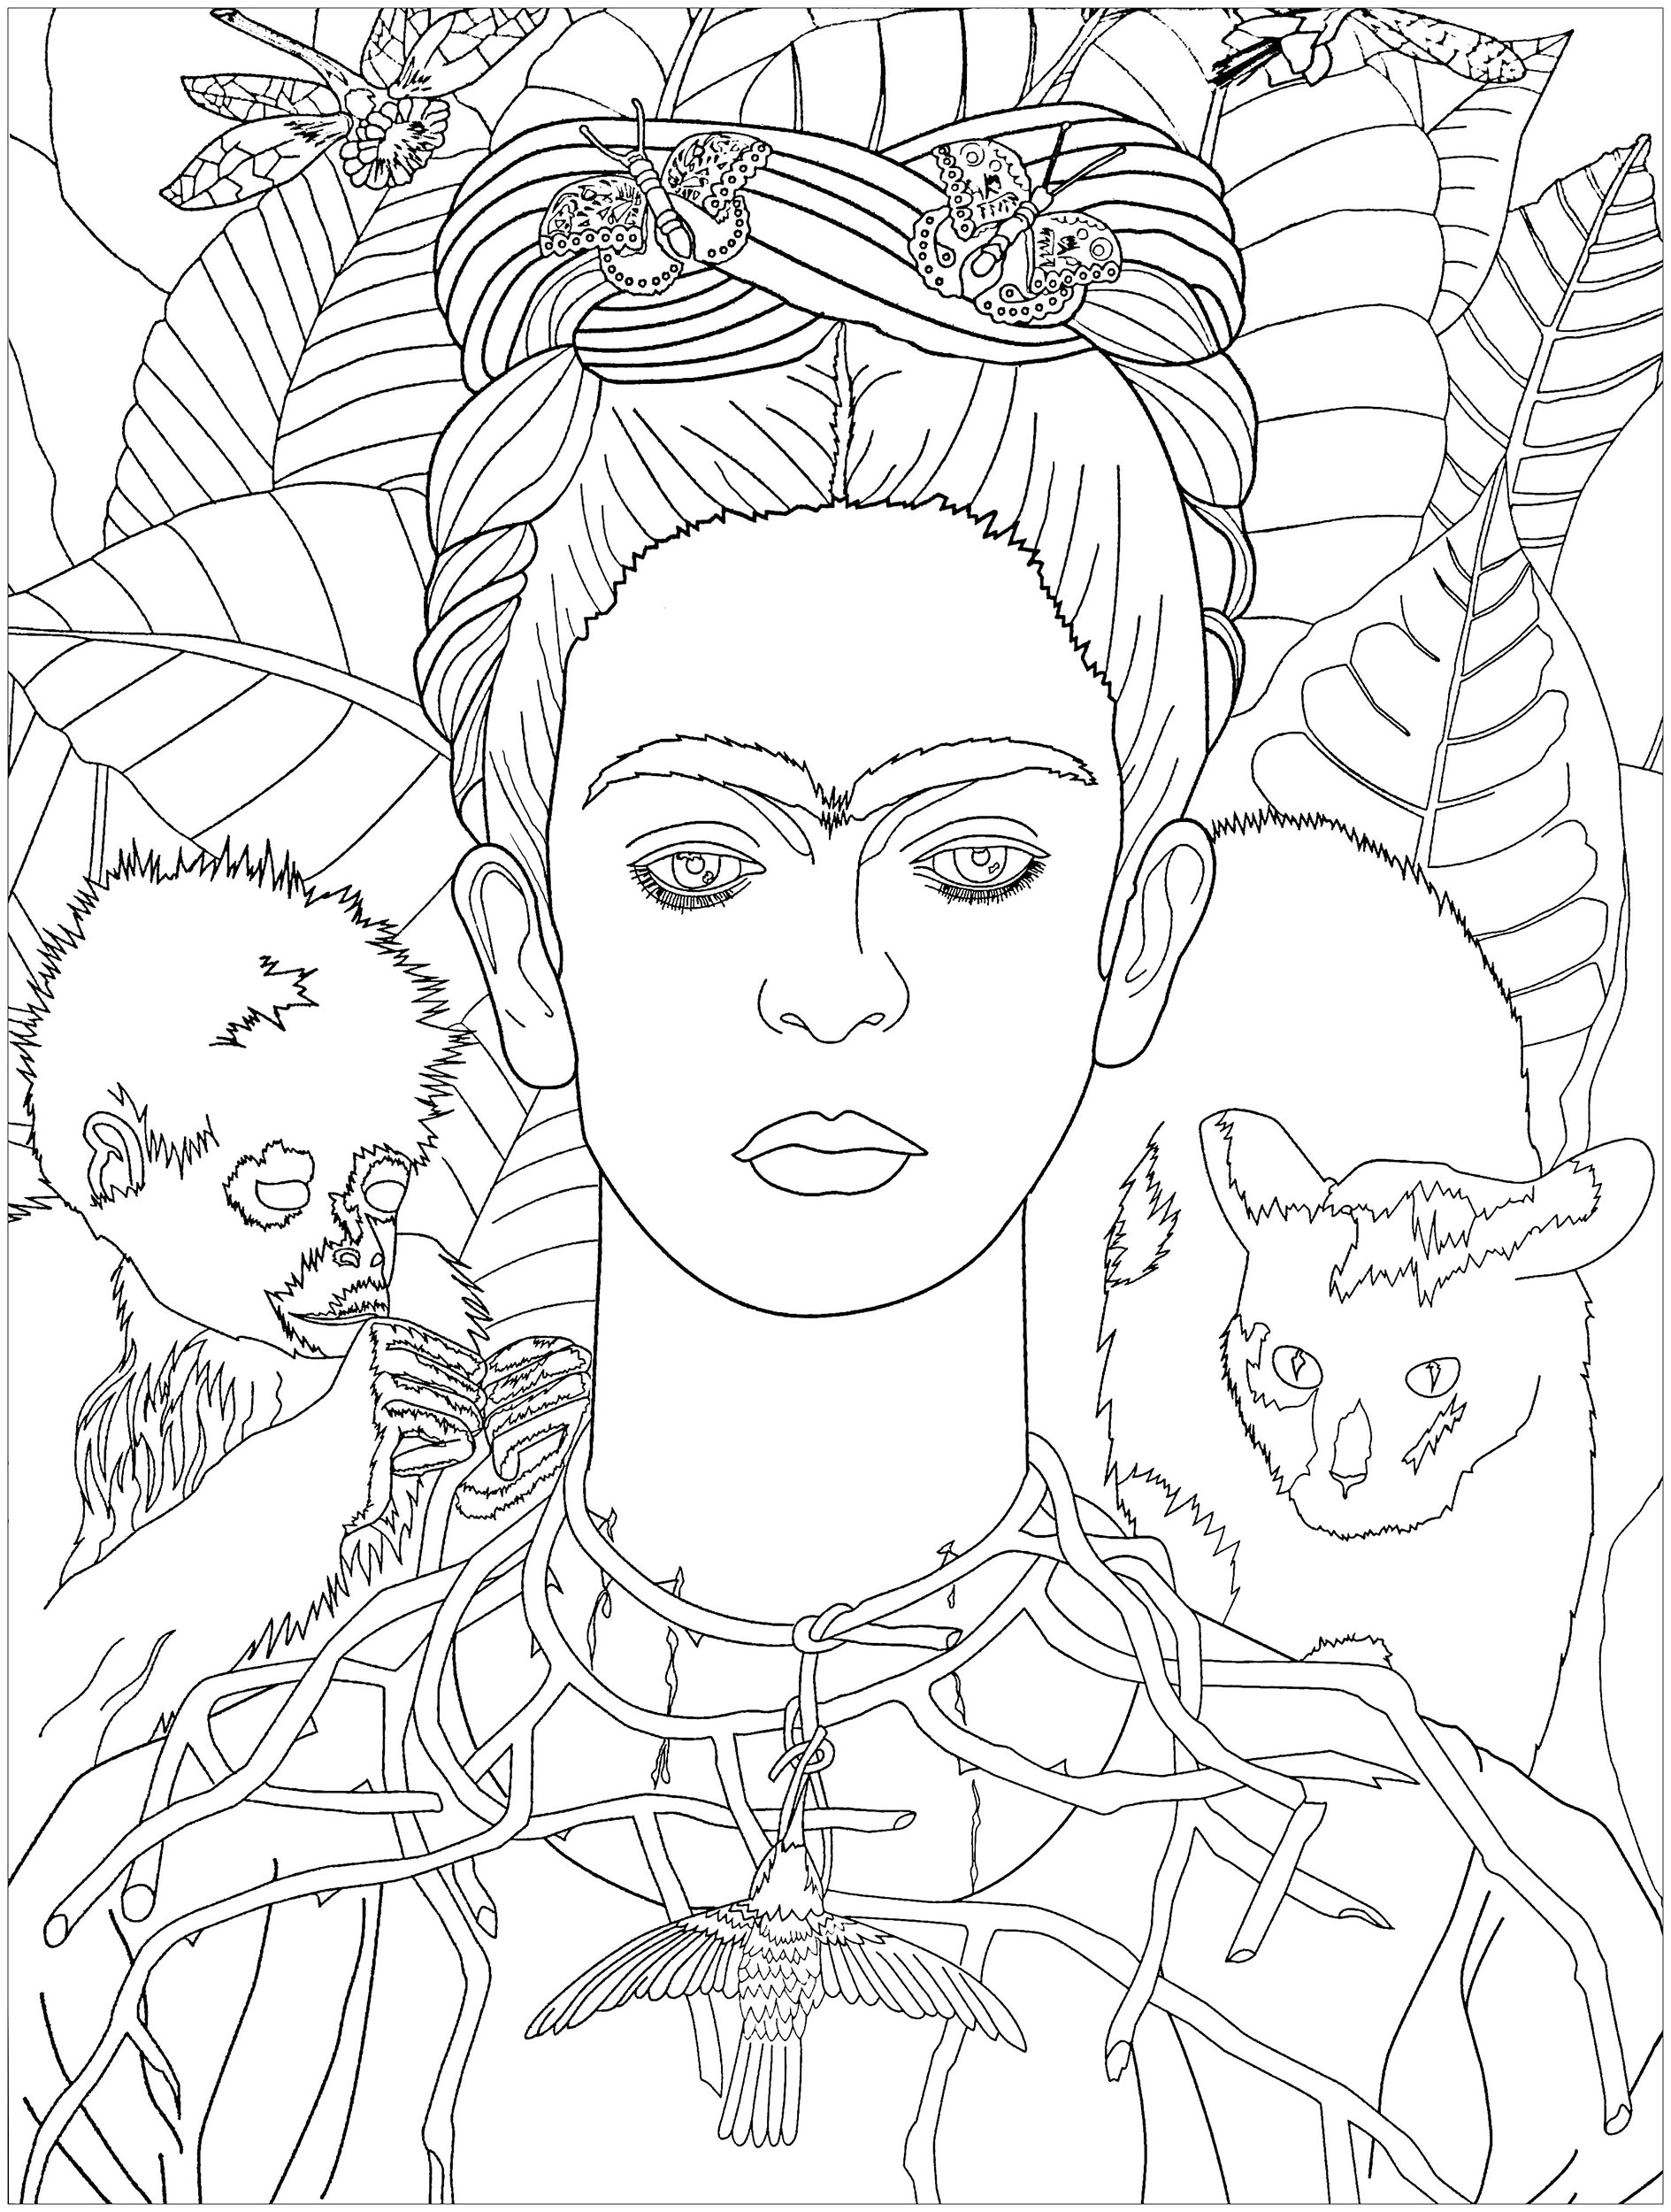 Autorretrato de Frida Kahlo con collar de espinas (1940). ¿Lo sabía? Hasta varios años después de su muerte, su obra no fue ampliamente aclamada. Su reputación creció en la década de 1970 y alcanzó lo que algunos críticos denominaron 'Fridamanía' en el siglo XXI.